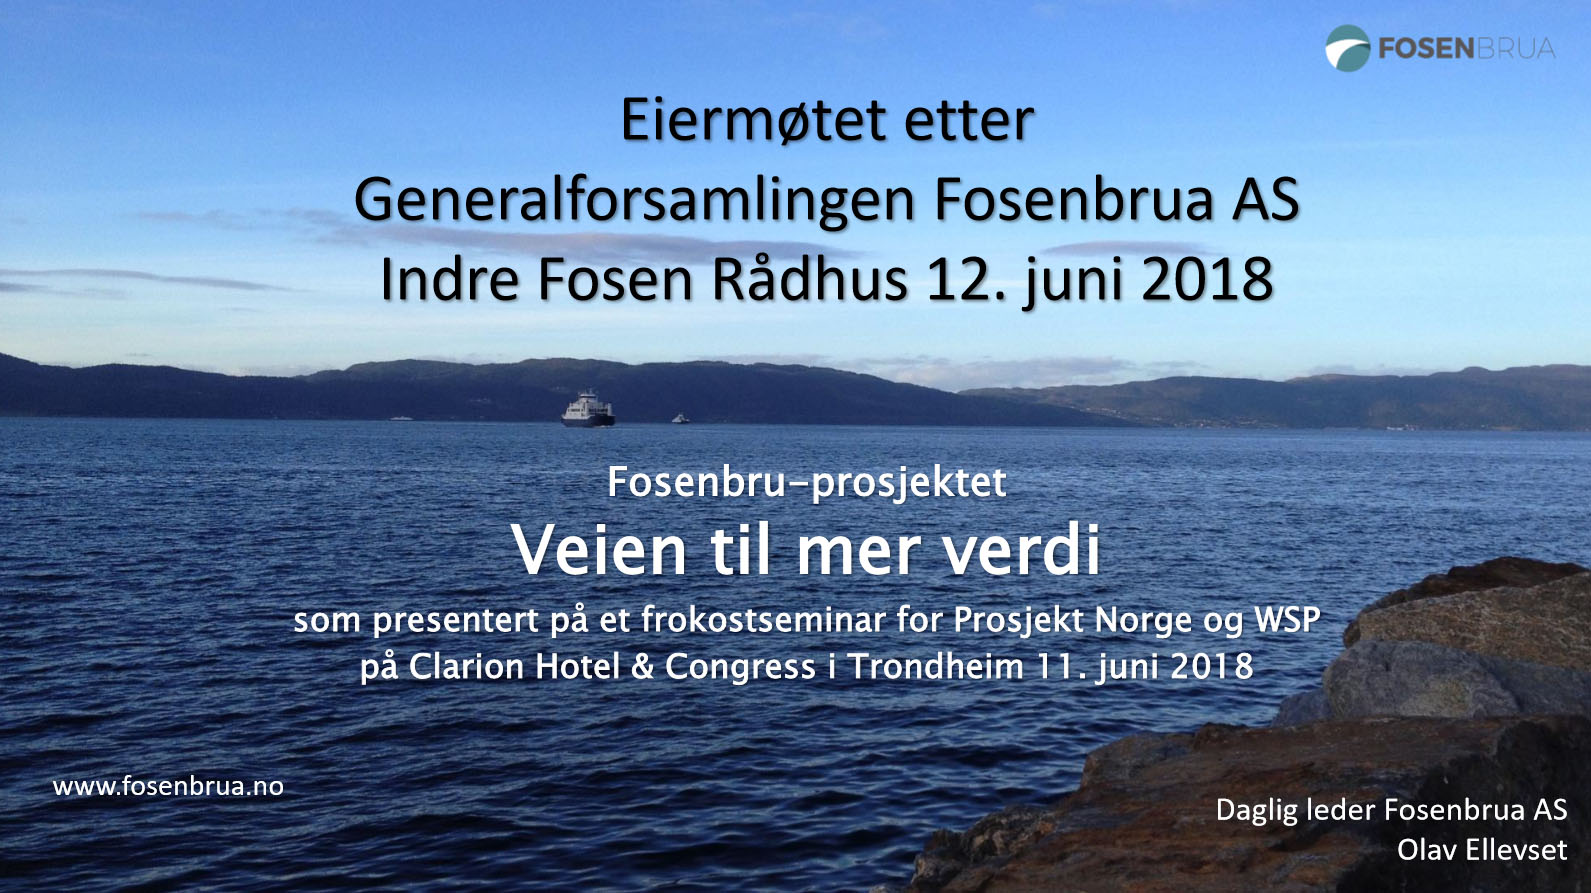 Eiermøtet etter Generalforsamlingen Fosenbrua AS Indre Fosen Rådhus 12. juni 2018